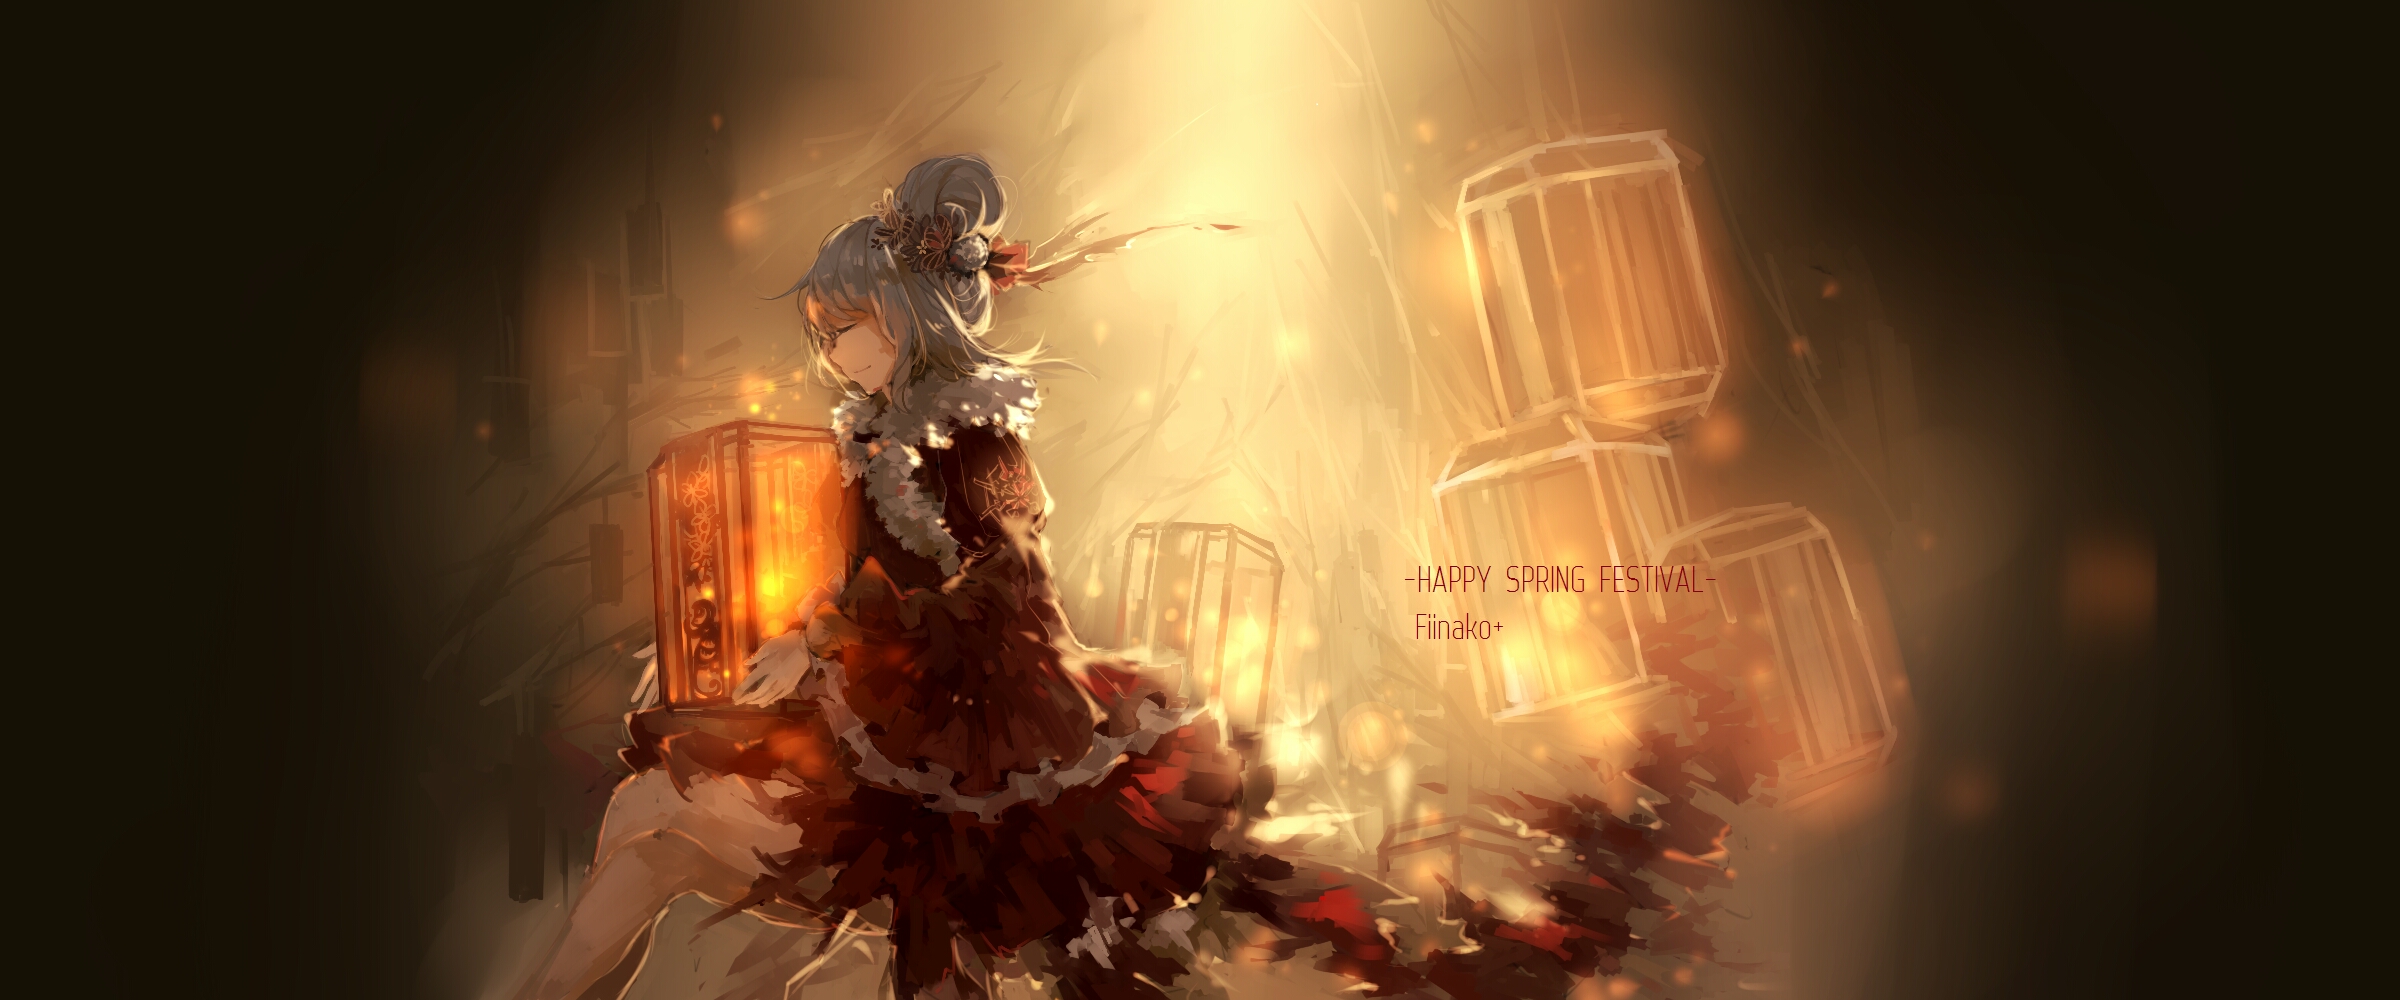 Anime Warship Girls HD Wallpaper | Background Image